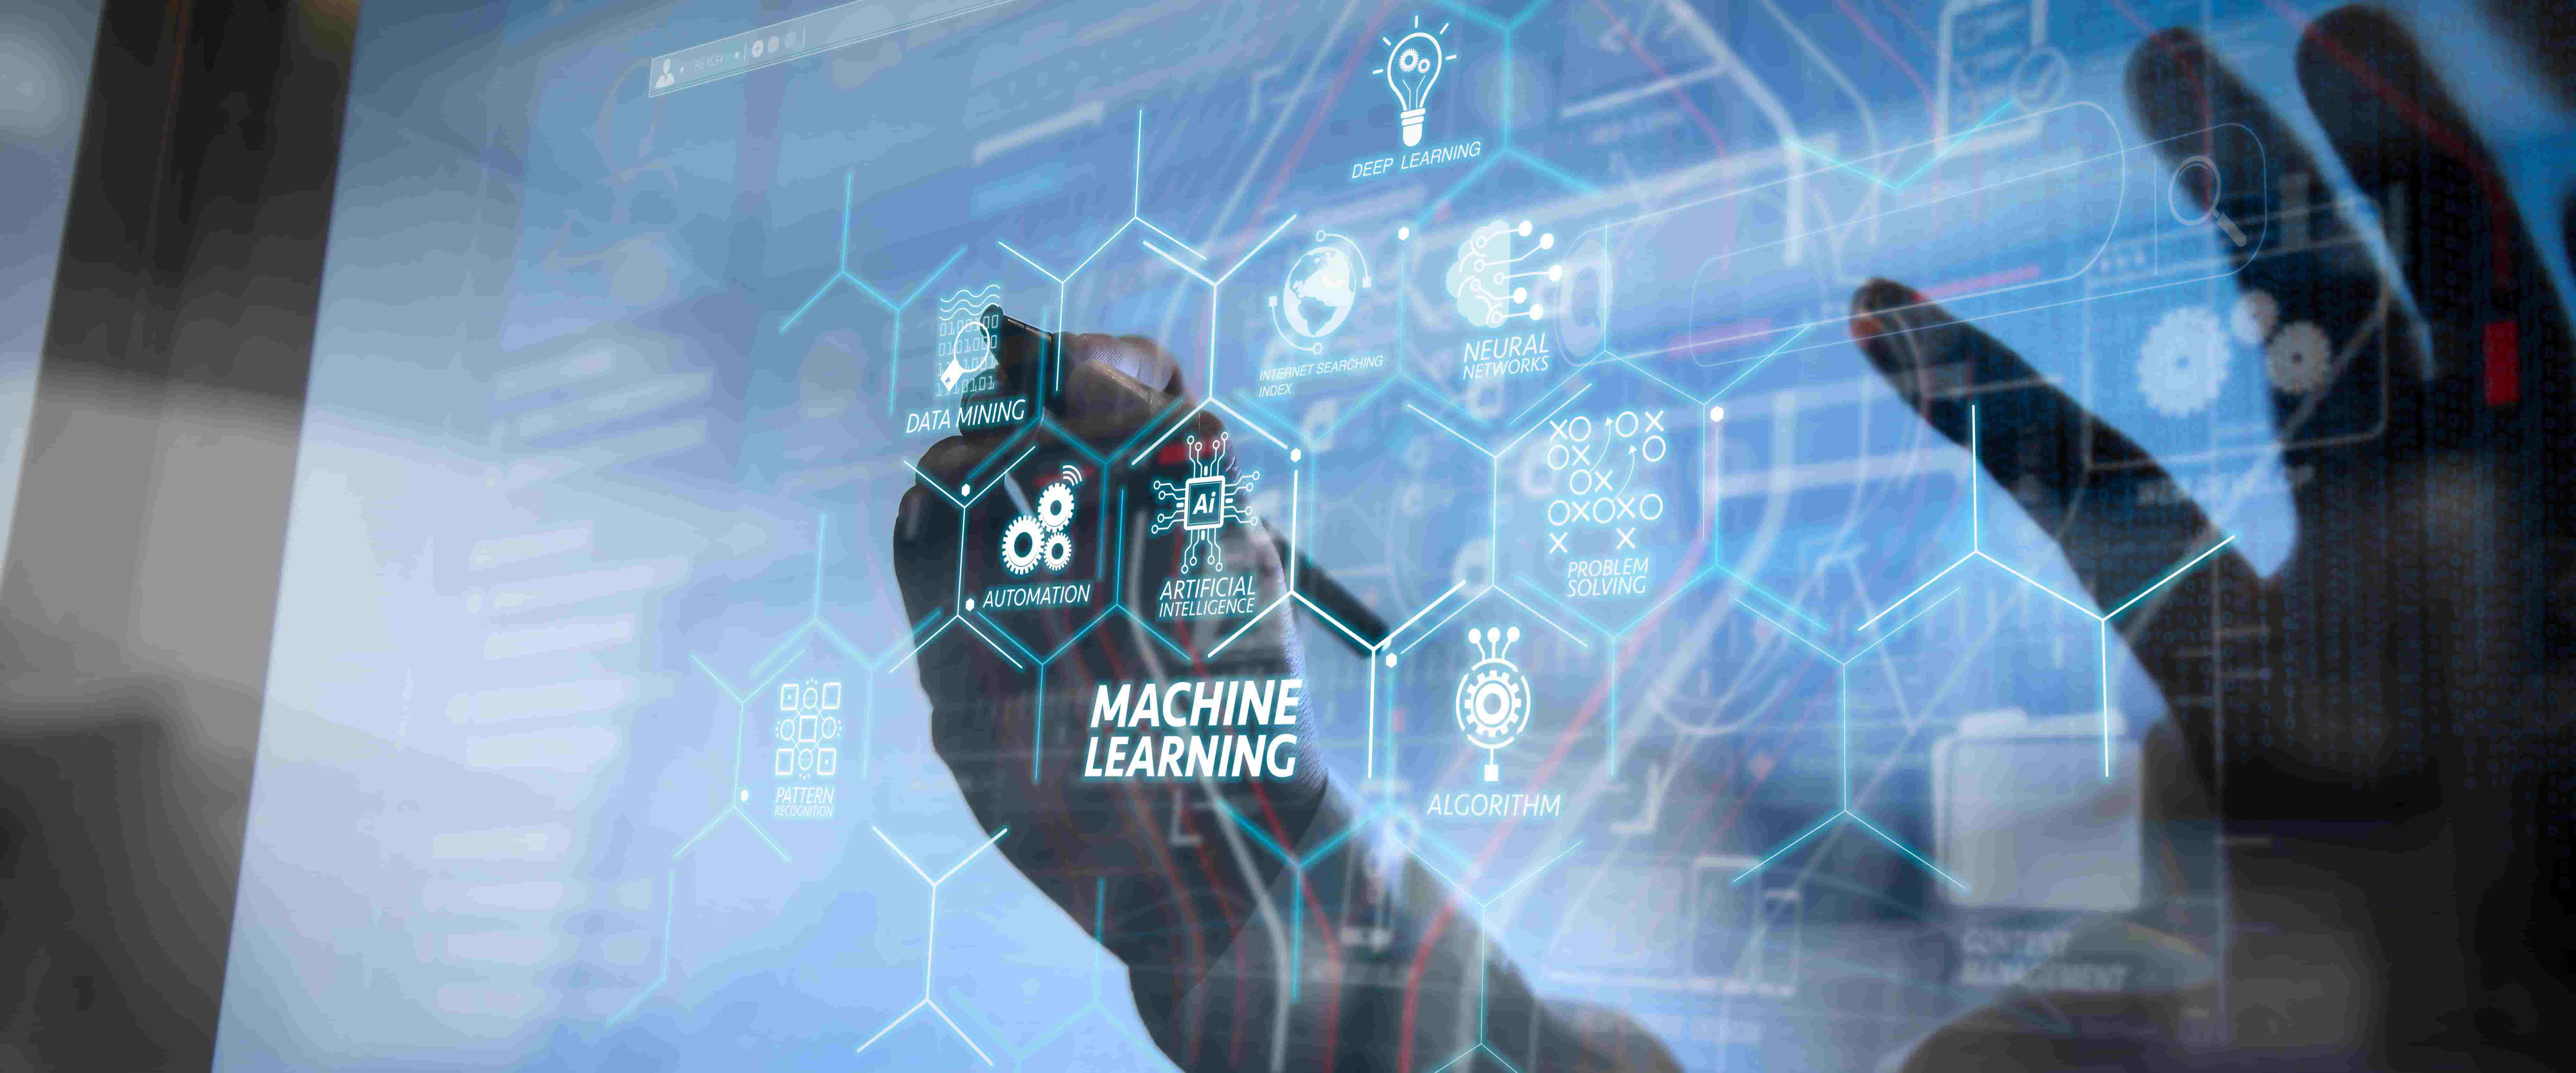 图片展示了一位使用现代触控界面的人，界面上显示有“机器学习”及相关的技术和图标，彰显了高科技和数据分析的概念。